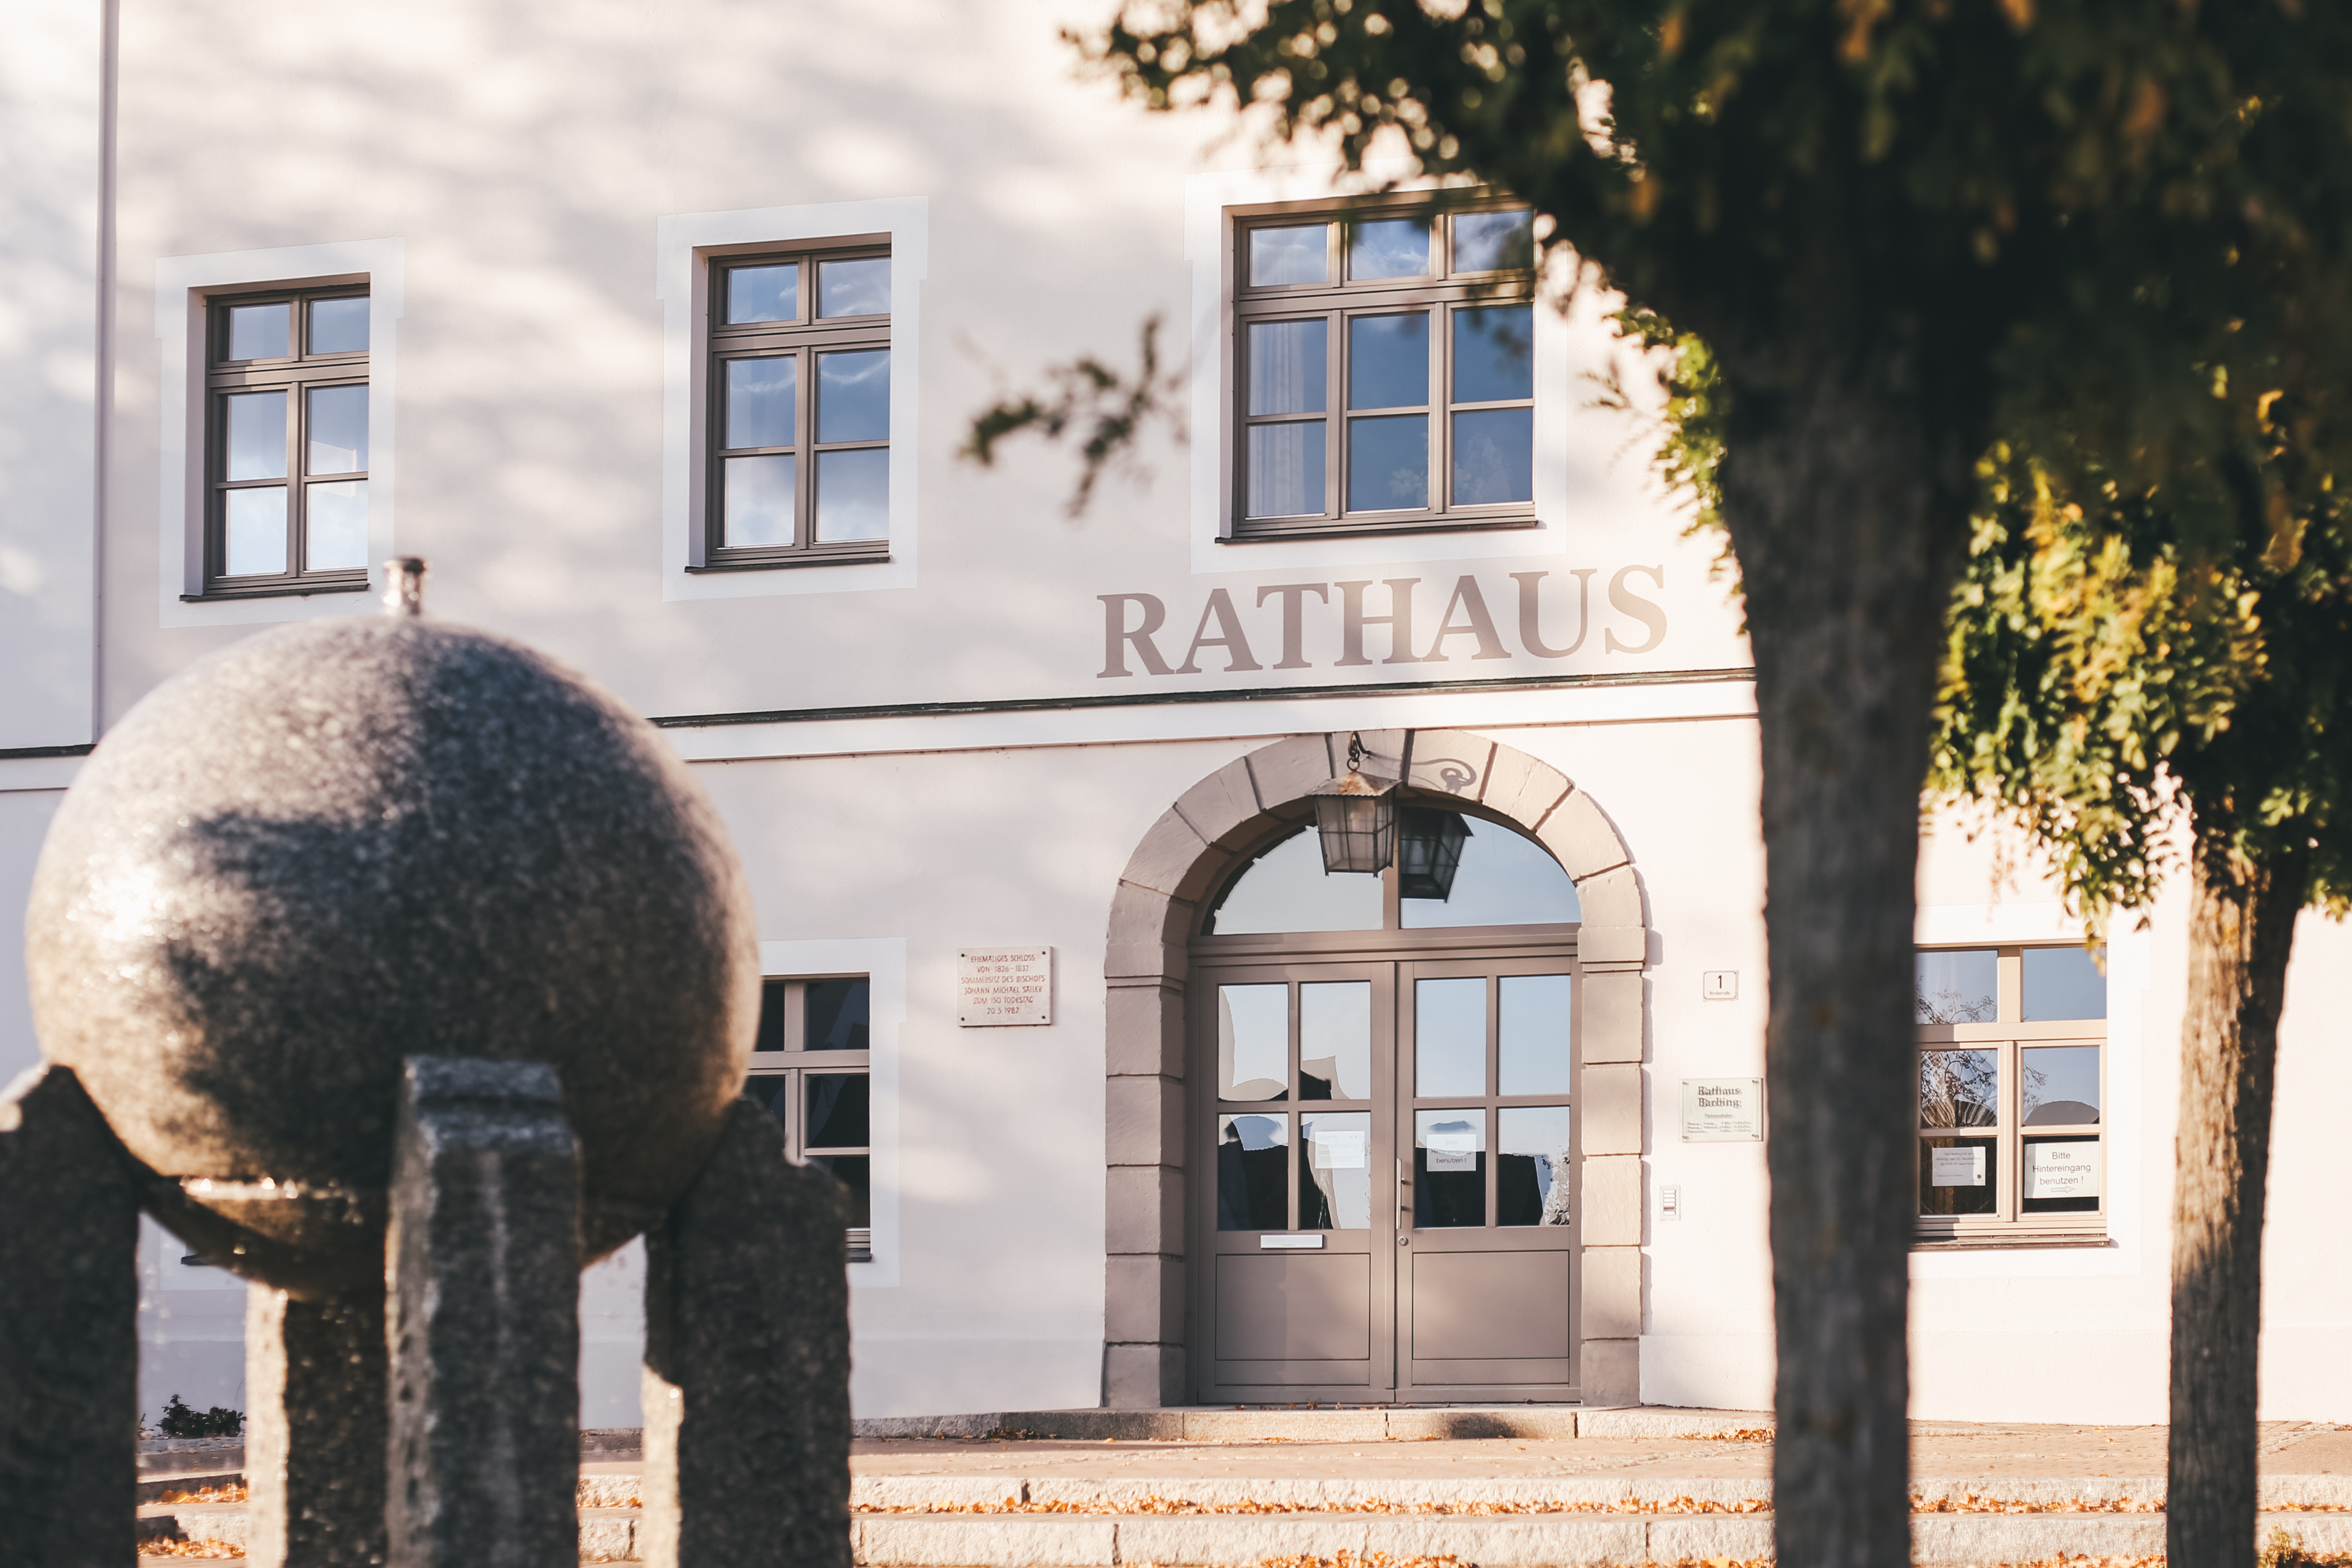 Rathaus & Bauhof am 10. Mai geschlossen